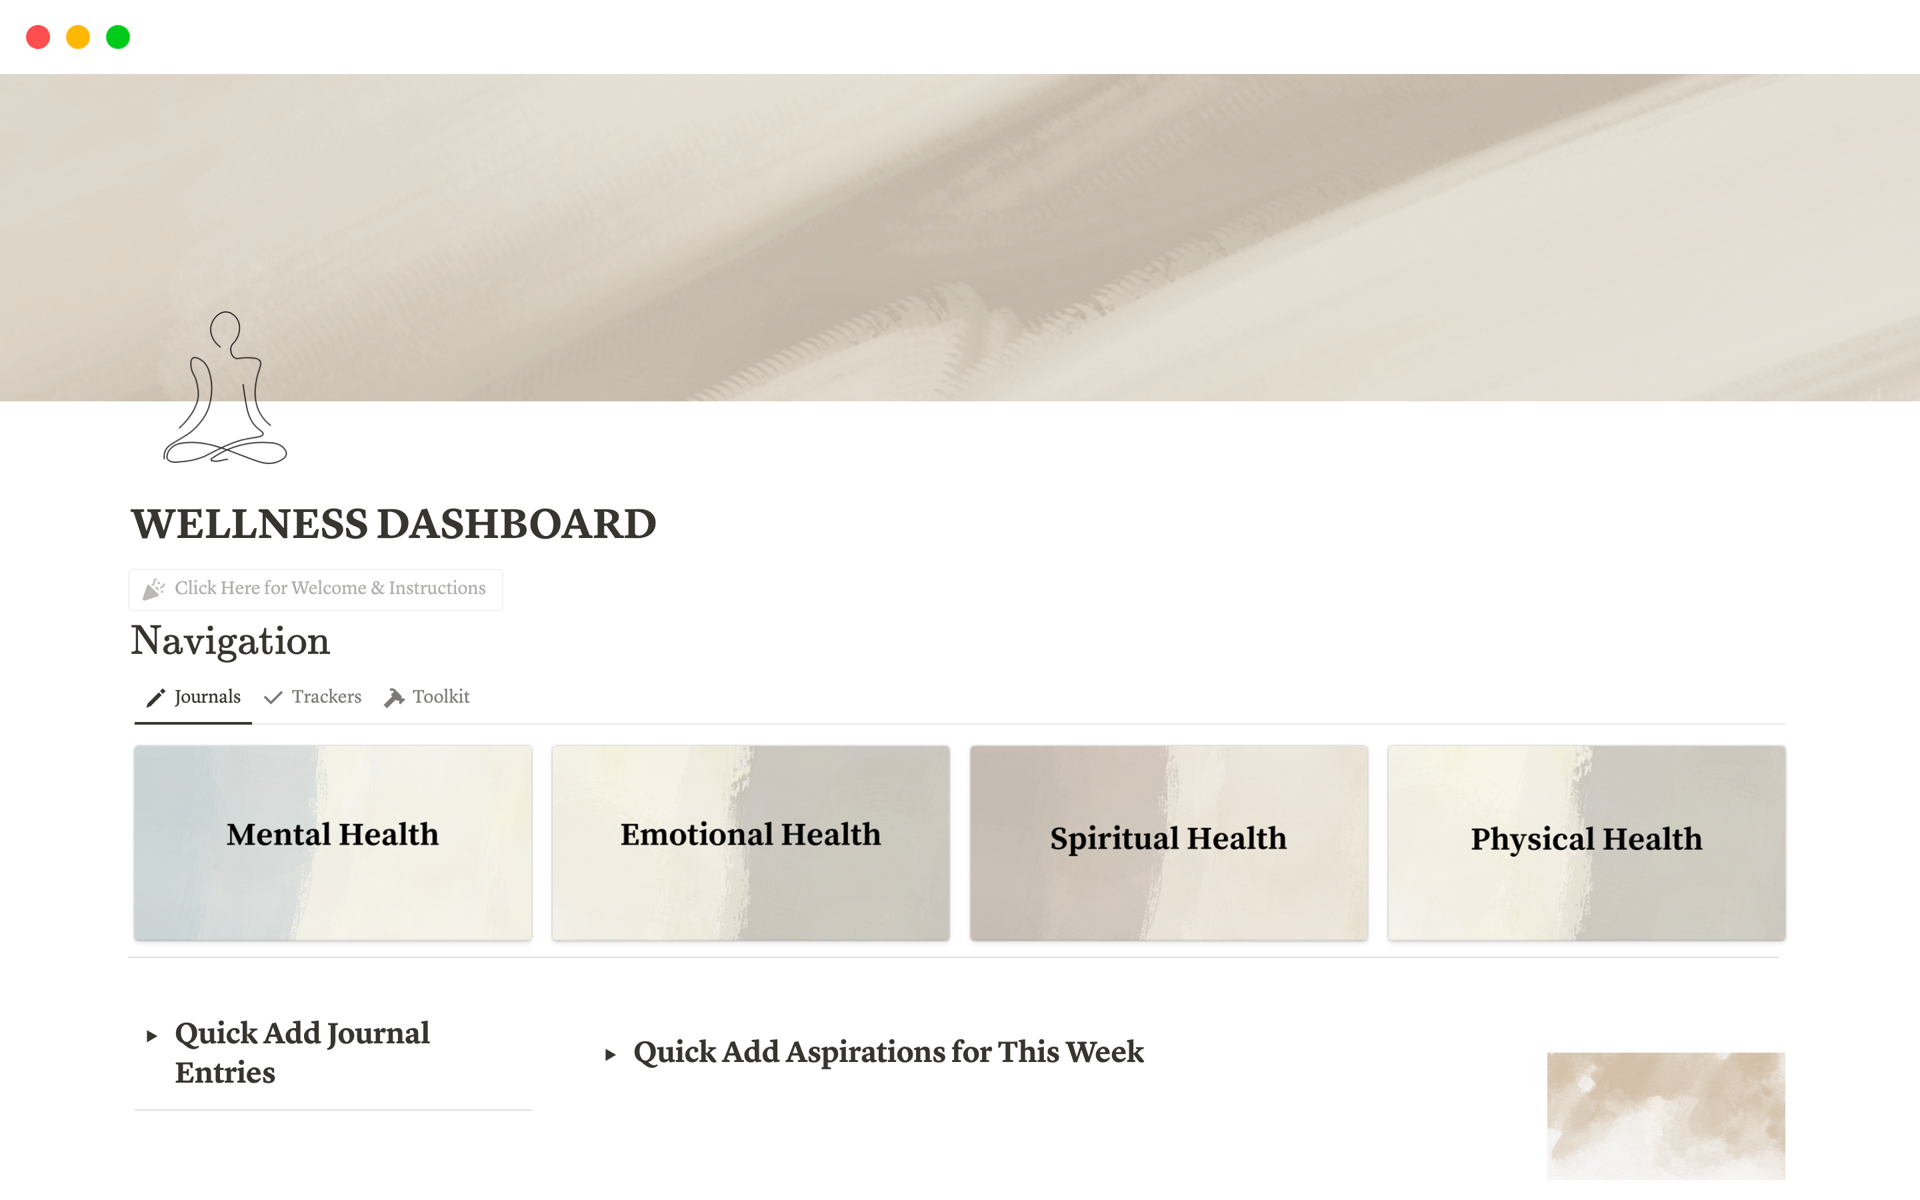 Vista previa de una plantilla para Wellness Dashboard